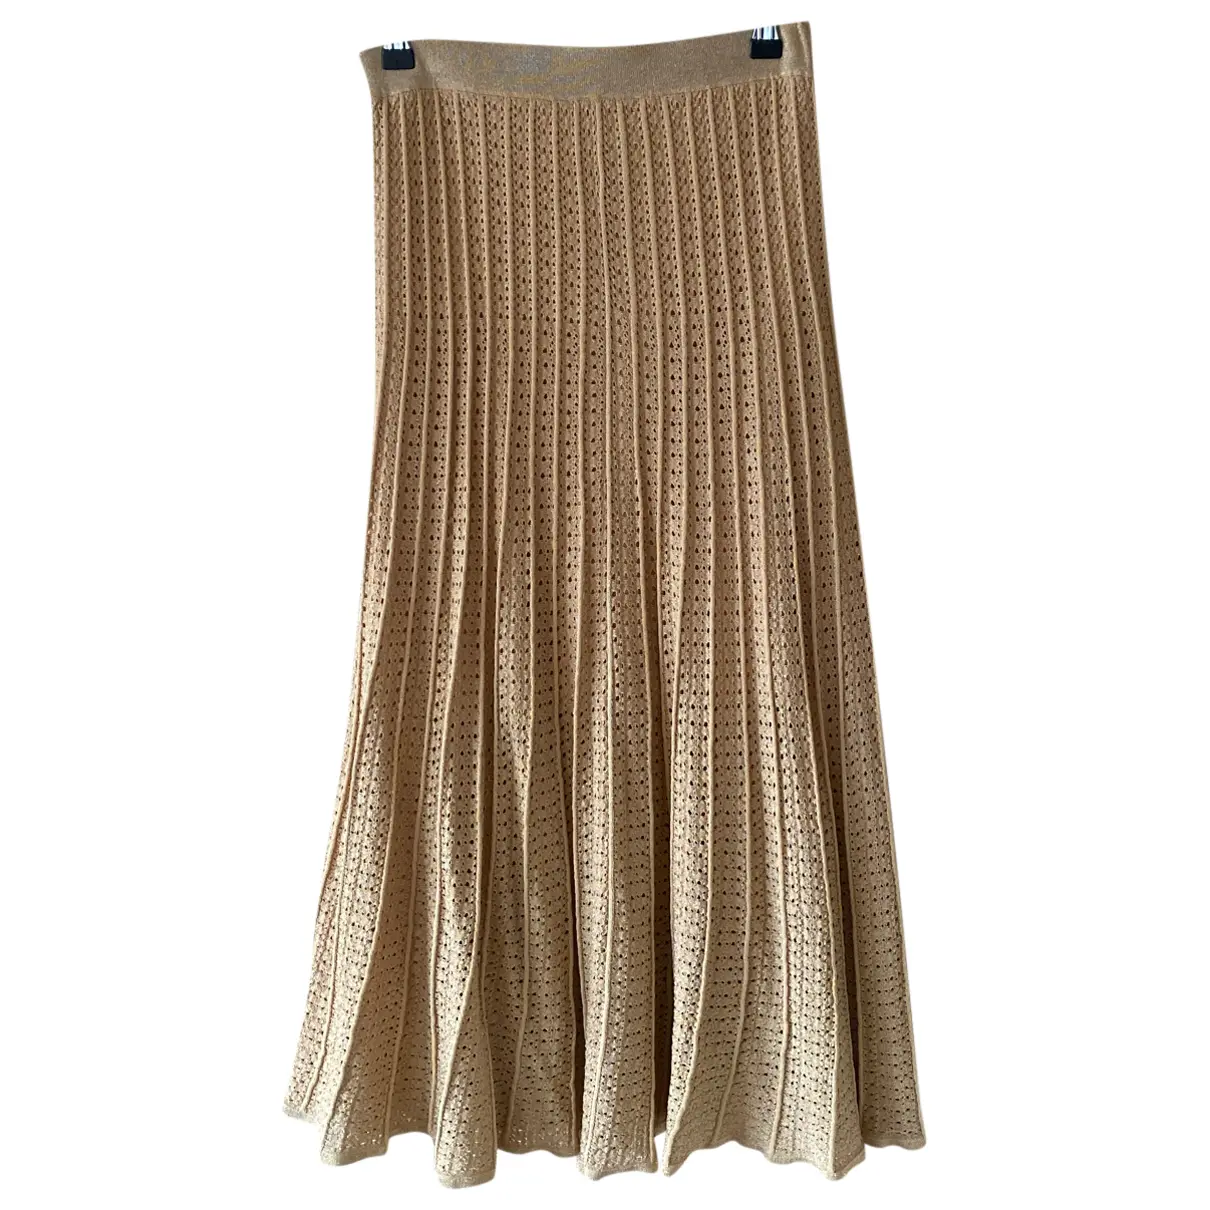 Spring Summer 2020 mid-length skirt